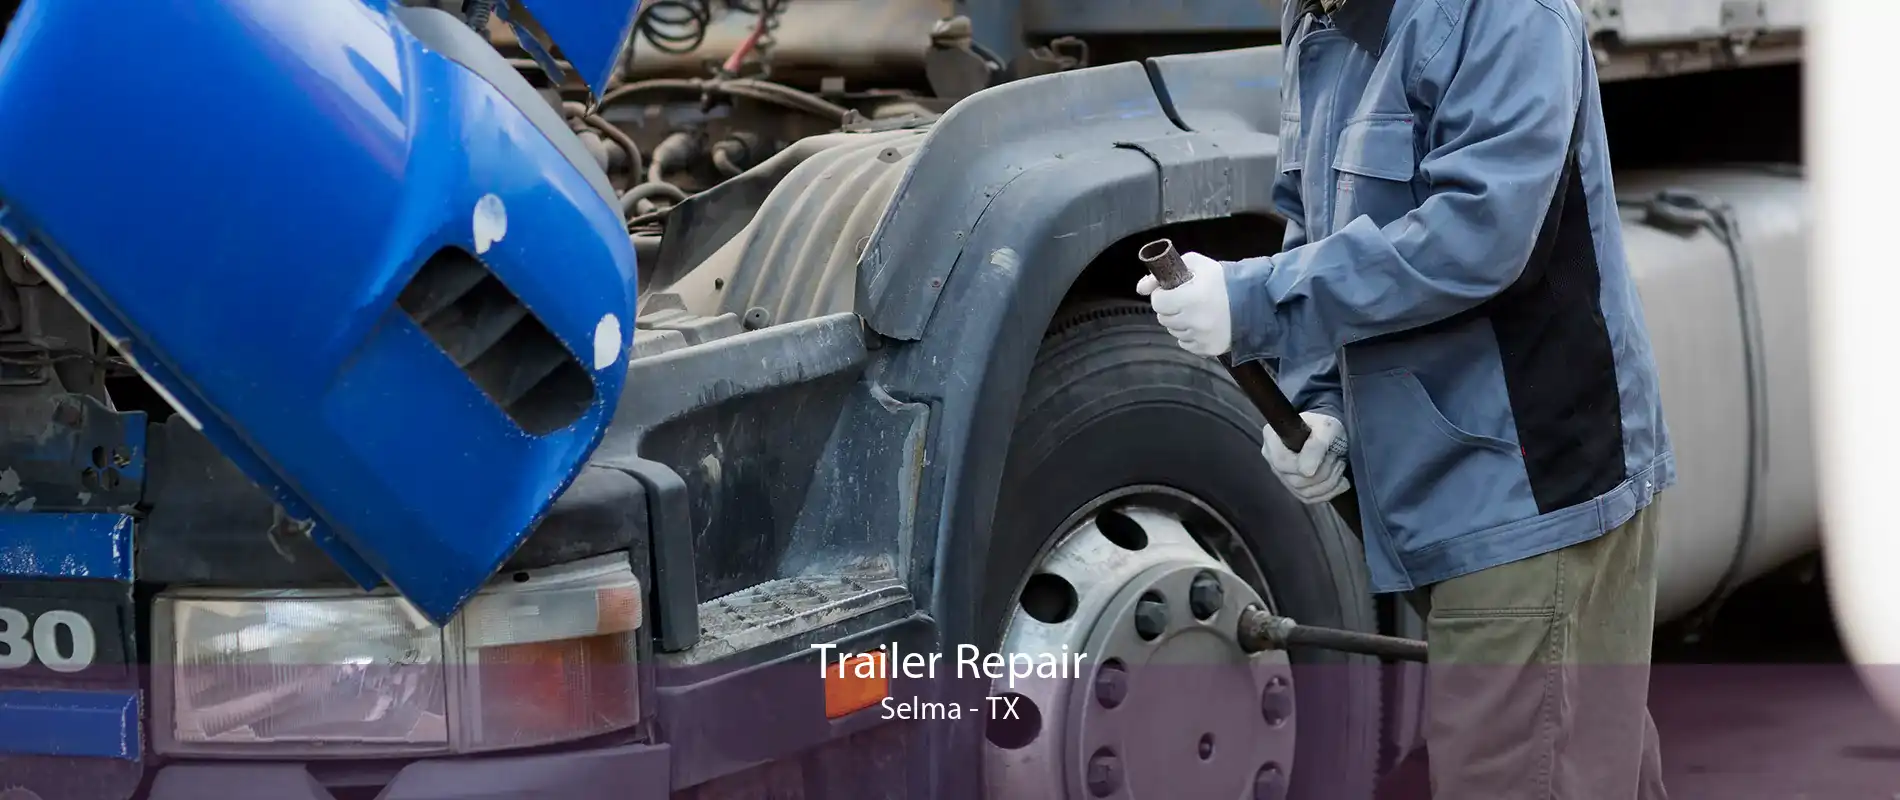 Trailer Repair Selma - TX